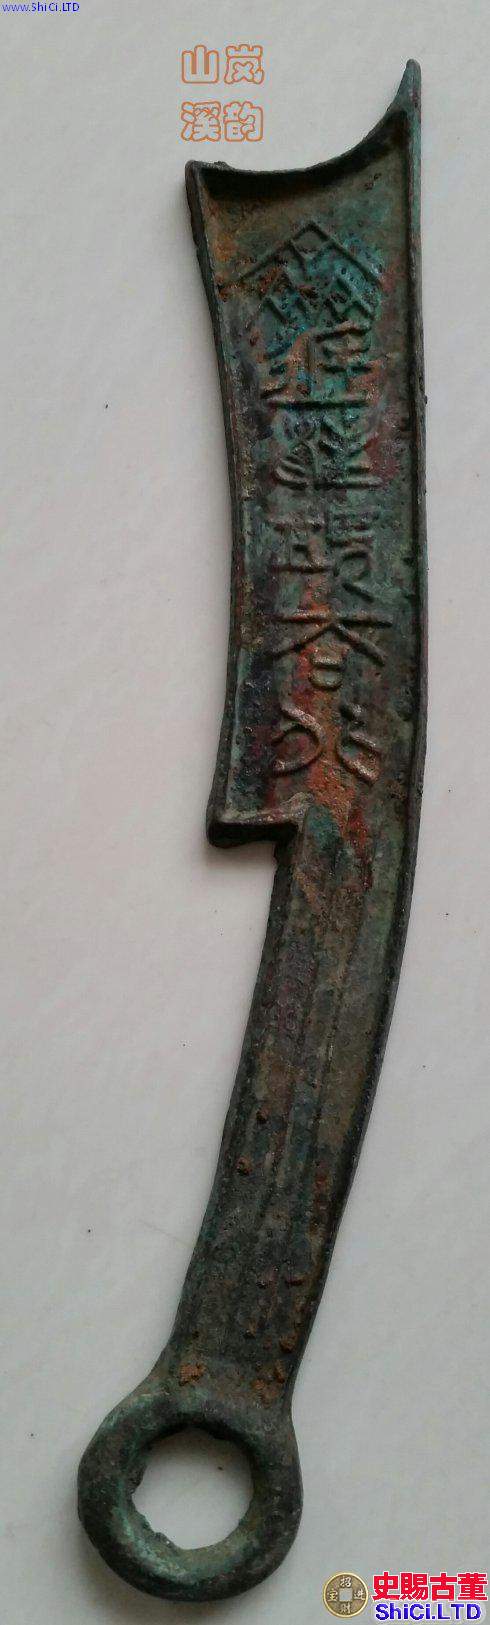 中國最早的紀念幣 《齊建邦長法化背工》六字刀